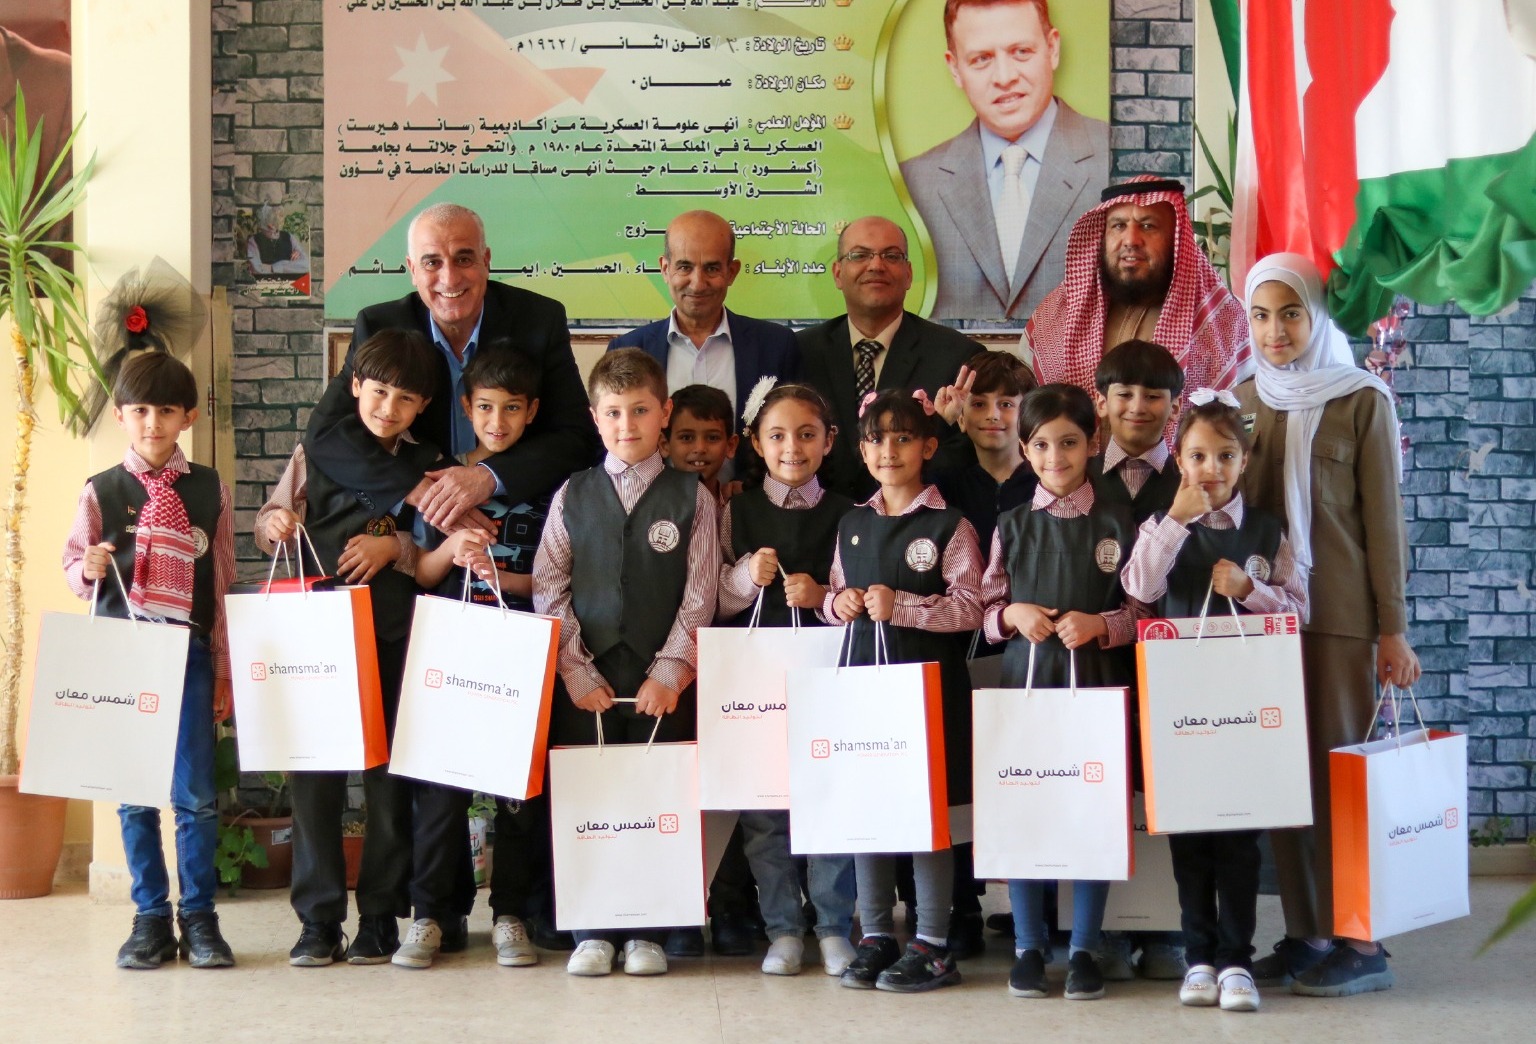 جمعية أيتام معان الخيرية تكرم طلبة مدرسة جامعة الحسين بن طلال الفائزين في مسابقة حفظ القرآن الكريم والواعدين.